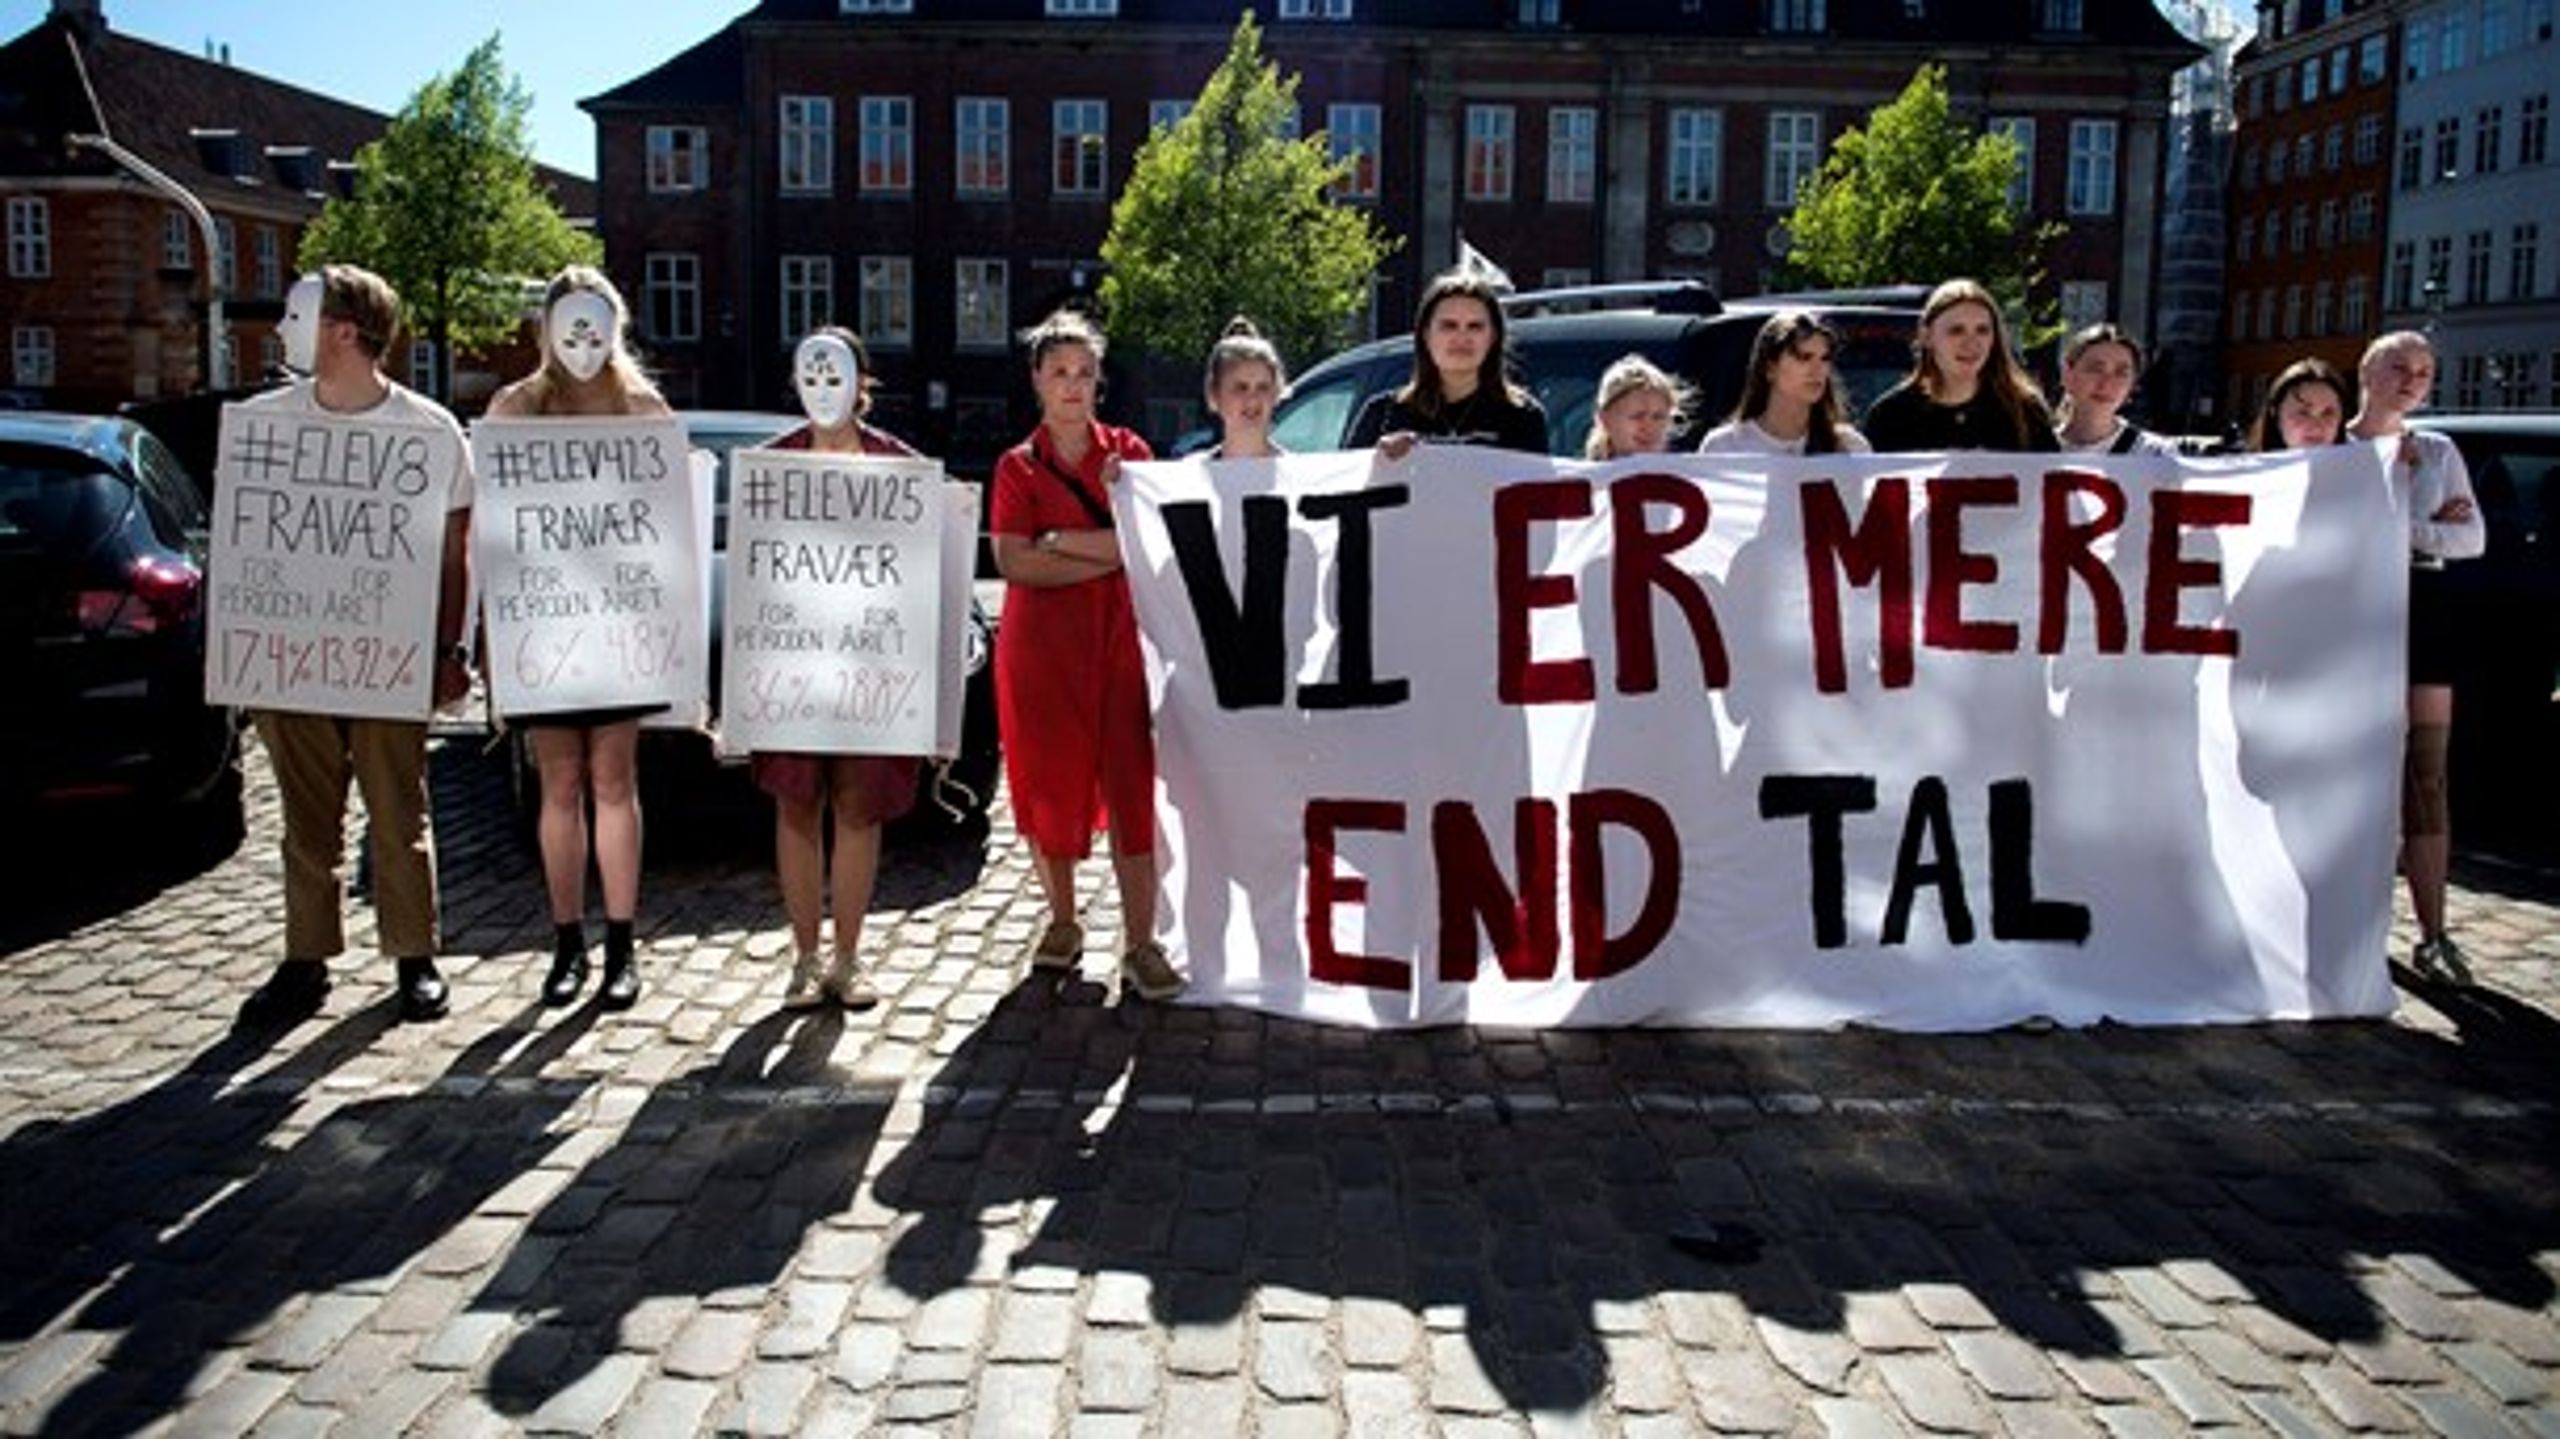 "Vi er mere end tal," lyder det på de københavnske gymnasieelevers banner. Og nu ser det ud til, at et af gymnasiets væsentligste tal - nemlig 1,08-bonusordningen - snart kan være fortid.&nbsp;